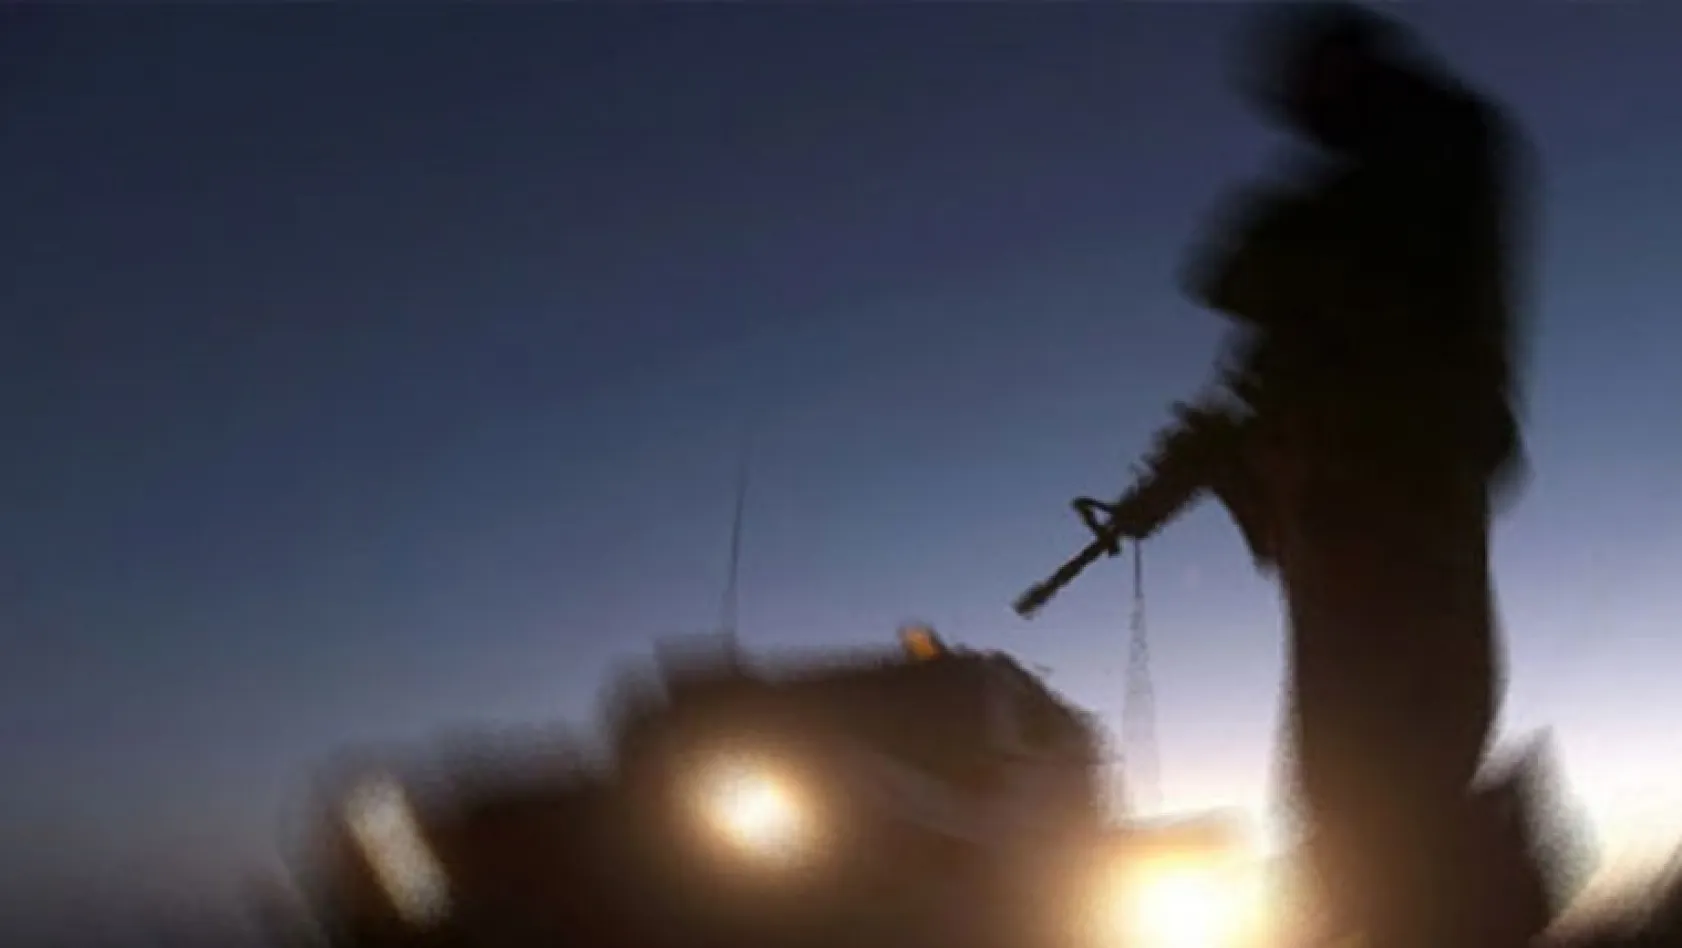 Bingöl'de çatışma: 1 asker yaralı